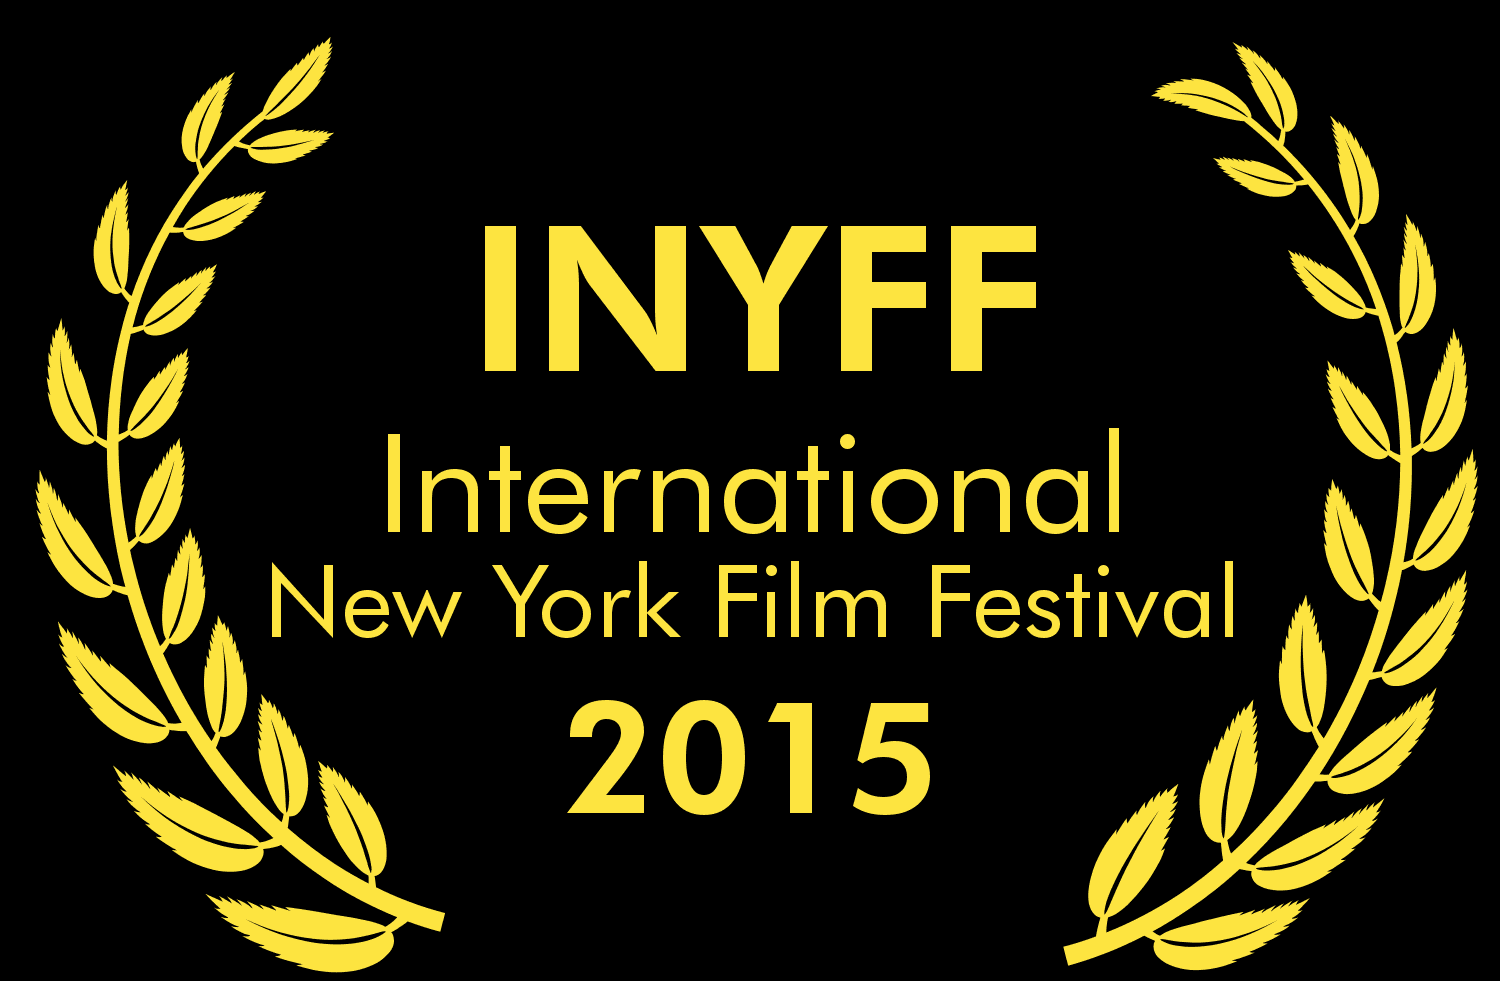 INTERNATIONAL NEW YORK FILM FESTIVAL 2015